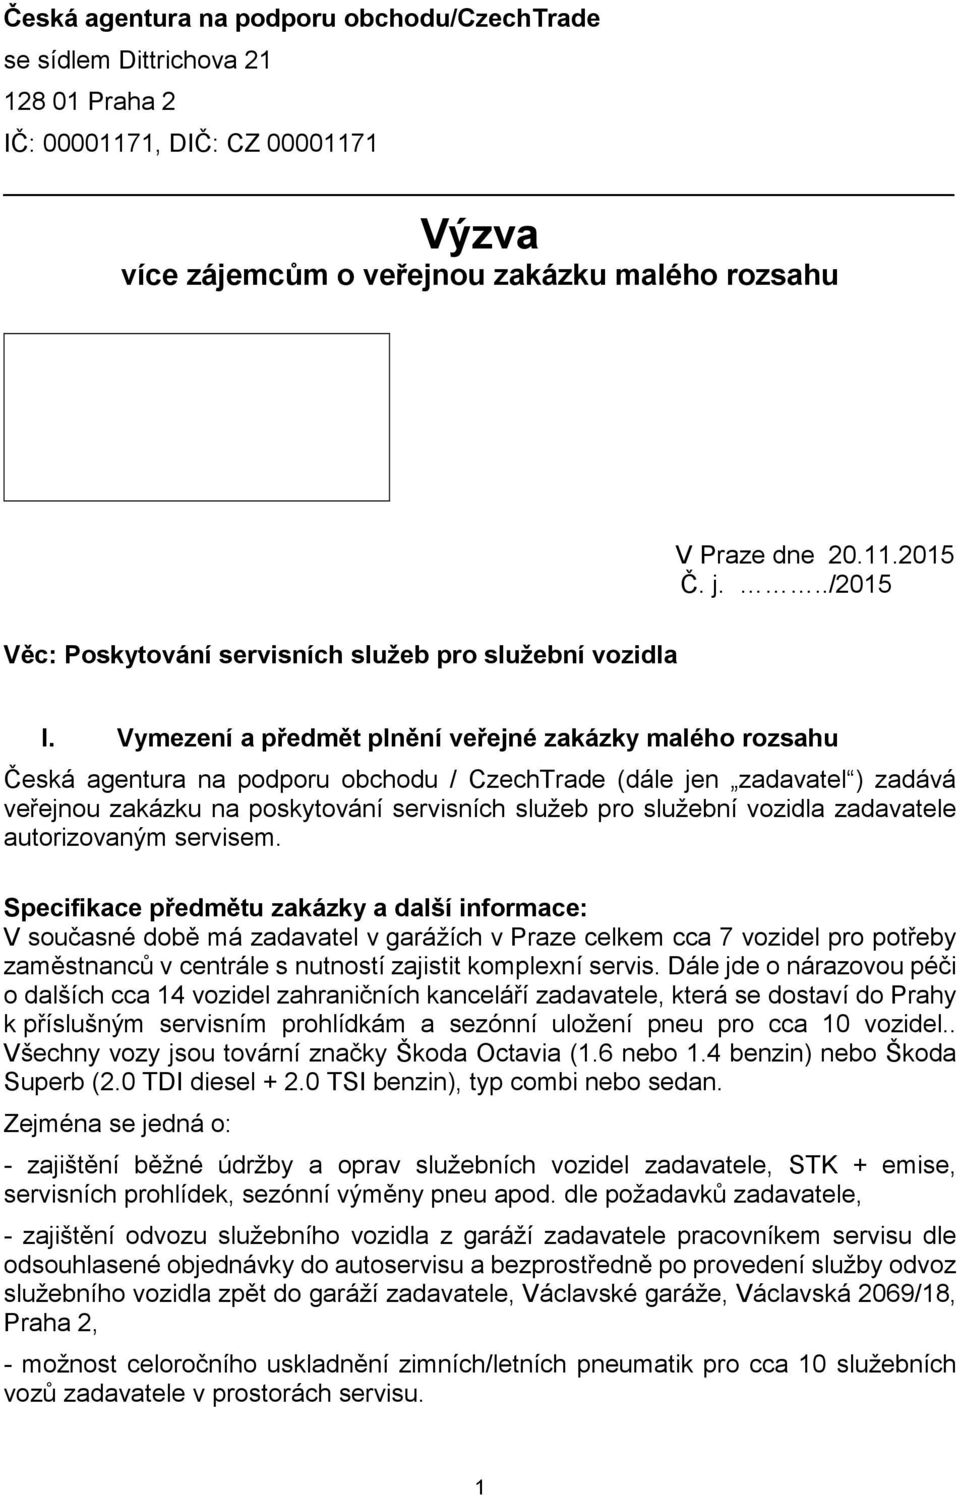 Vymezení a předmět plnění veřejné zakázky malého rozsahu Česká agentura na podporu obchodu / CzechTrade (dále jen zadavatel ) zadává veřejnou zakázku na poskytování servisních služeb pro služební